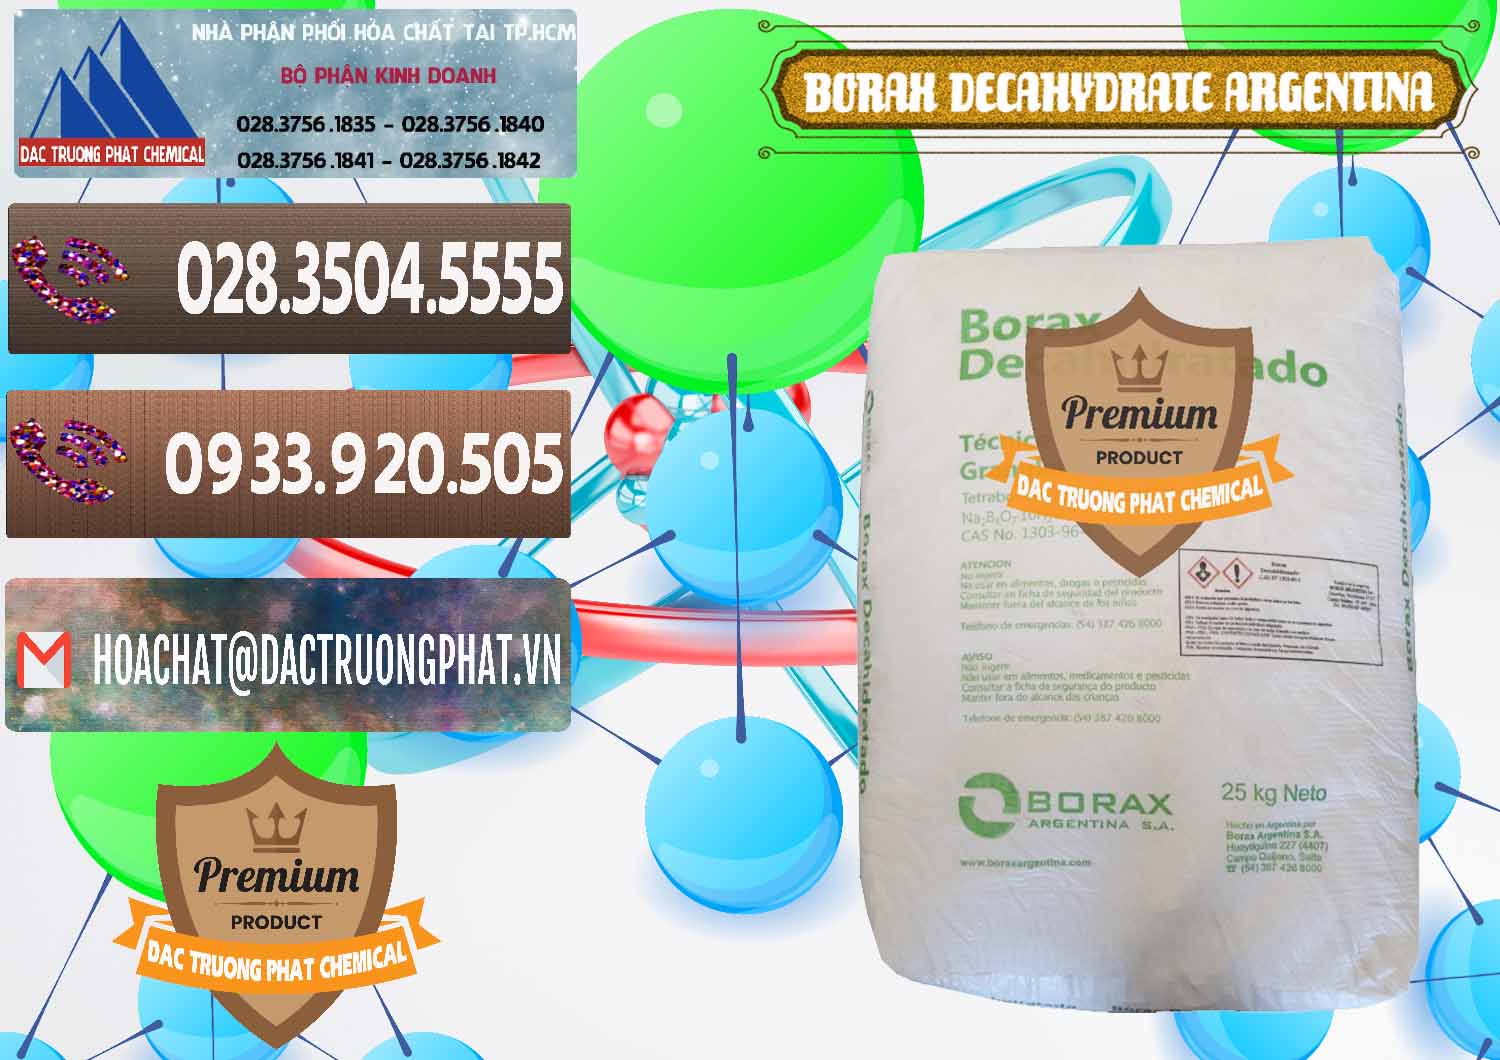 Cty chuyên phân phối ( bán ) Borax Decahydrate Argentina - 0446 - Công ty cung ứng & phân phối hóa chất tại TP.HCM - hoachatviet.net